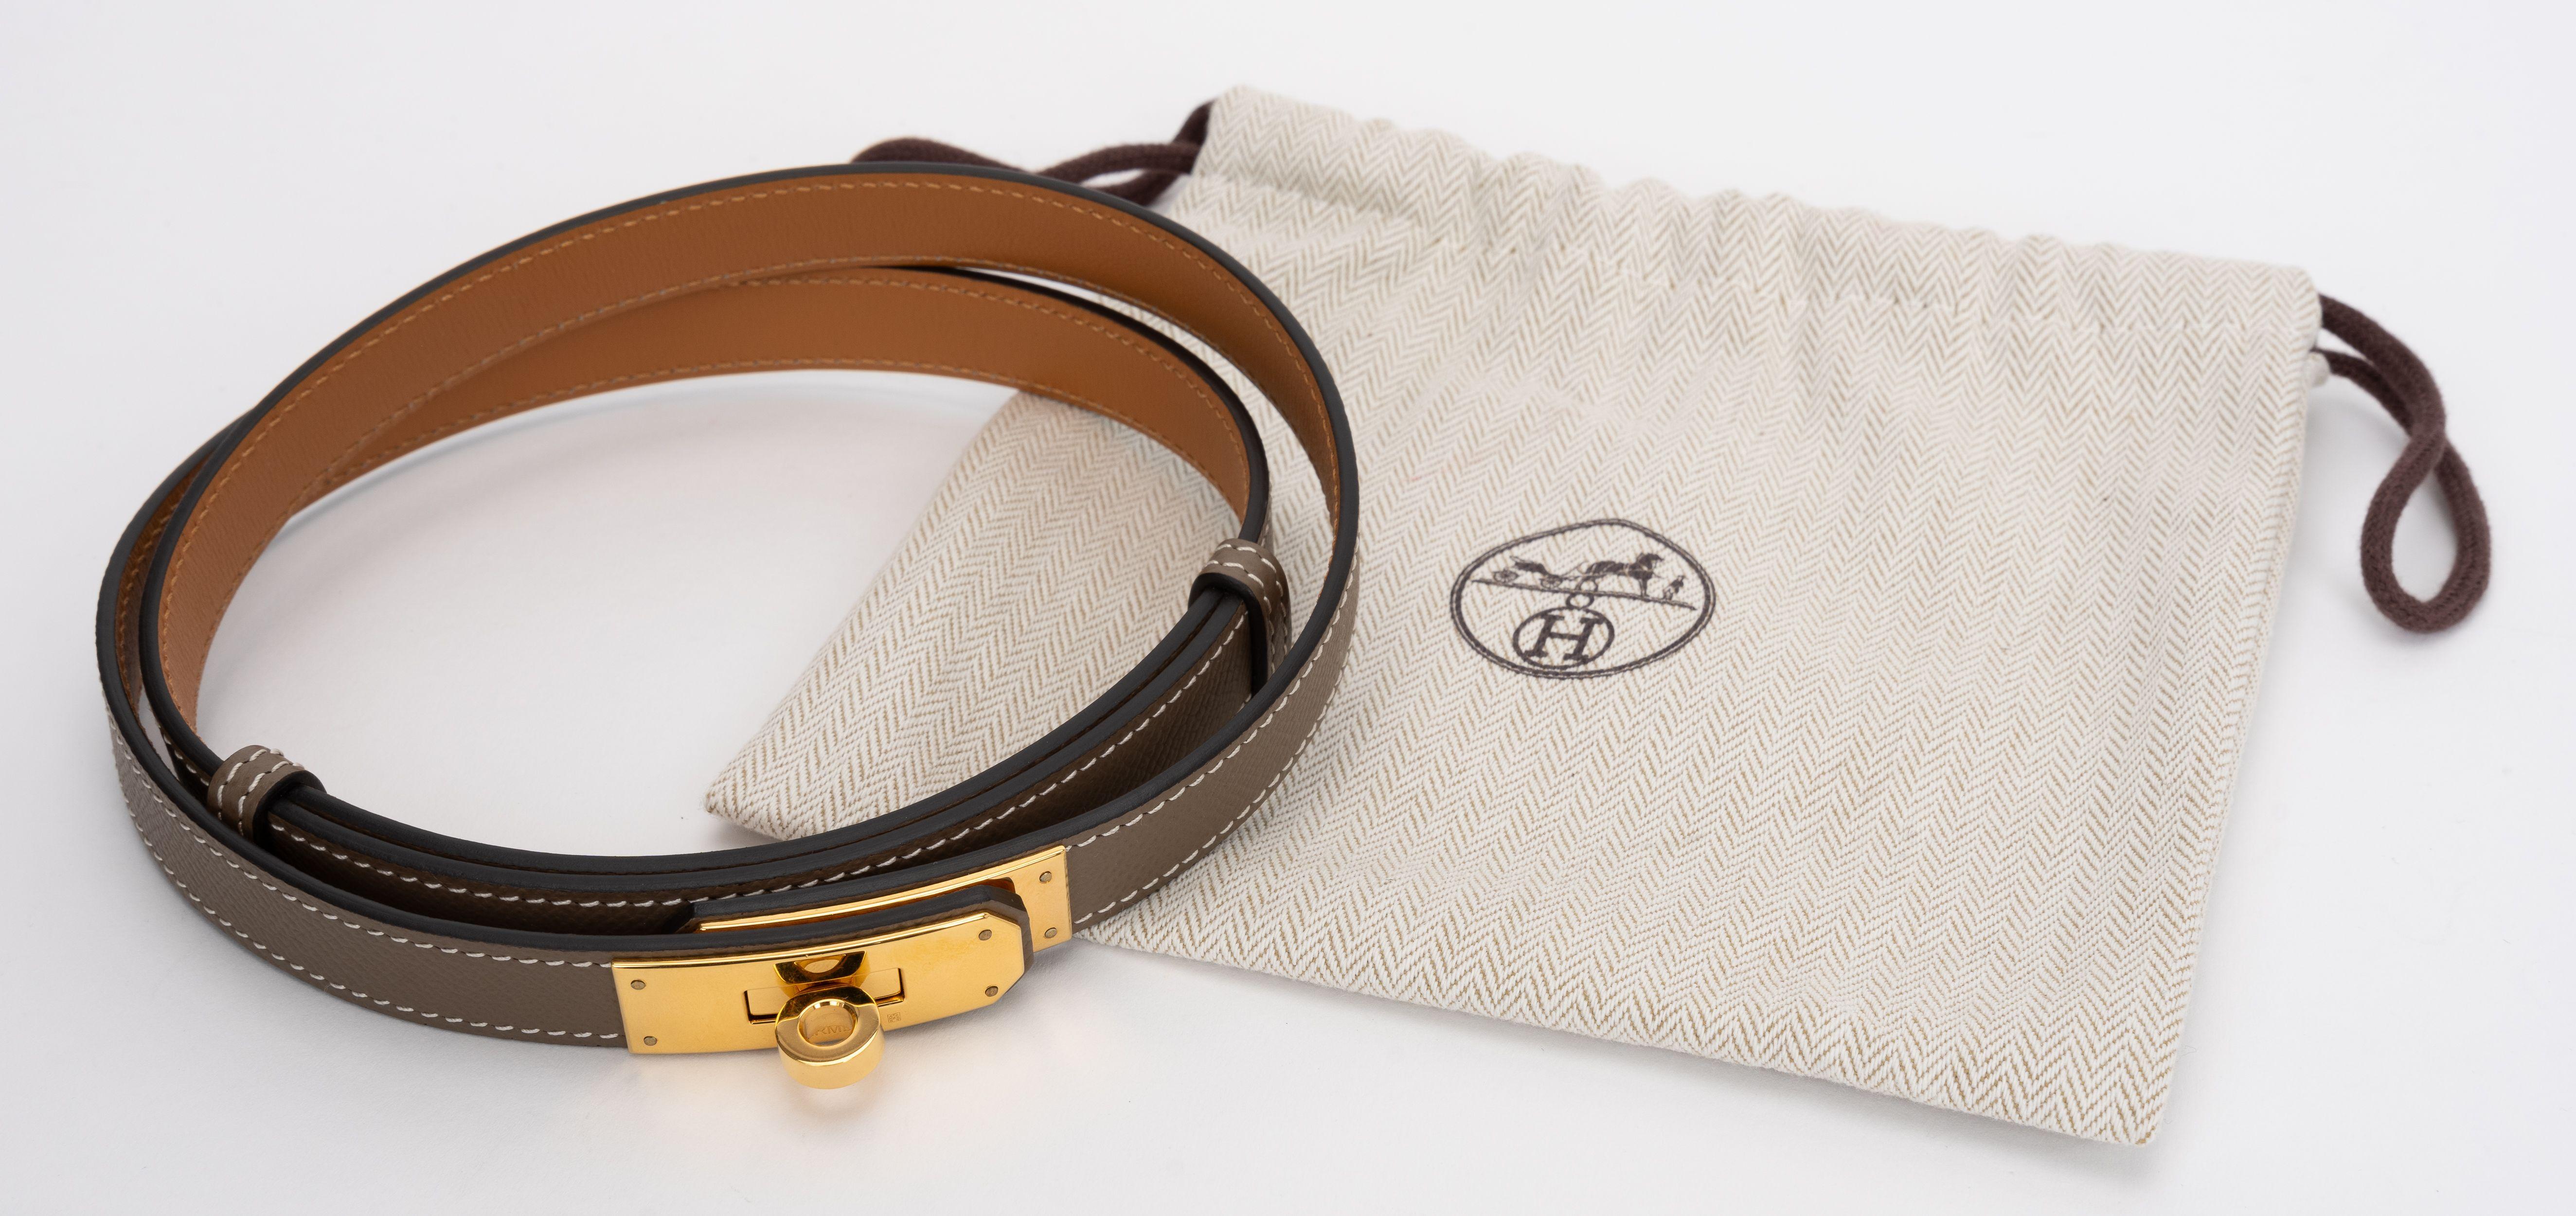 La ceinture Kelly Epsom d'Hermes est en cuir d'epsom etoupe, avec un cadenas Kelly doré sur le devant. La ceinture peut être portée aussi bien à la taille qu'en bas de la taille. Largeur : 0,71